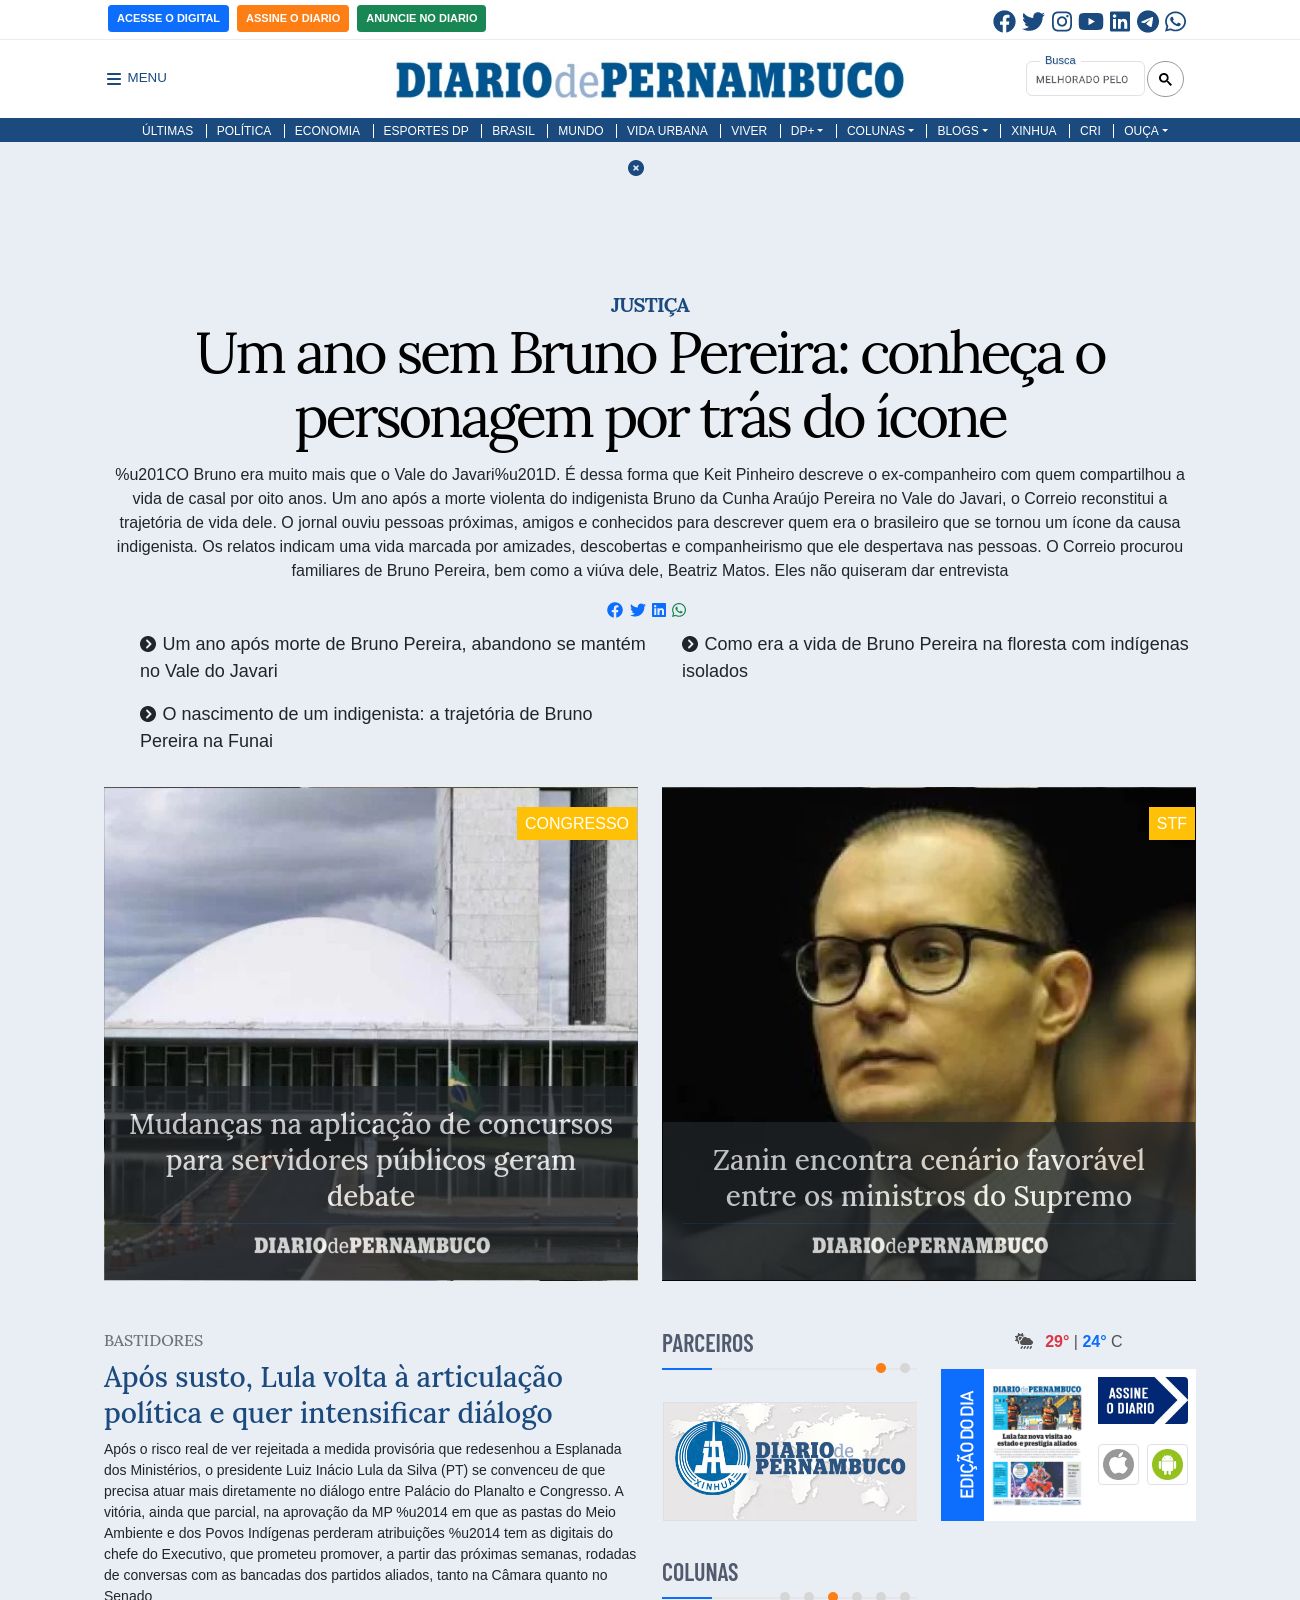 Diario de Pernambuco at 2023-06-05 07:50:43-03:00 local time